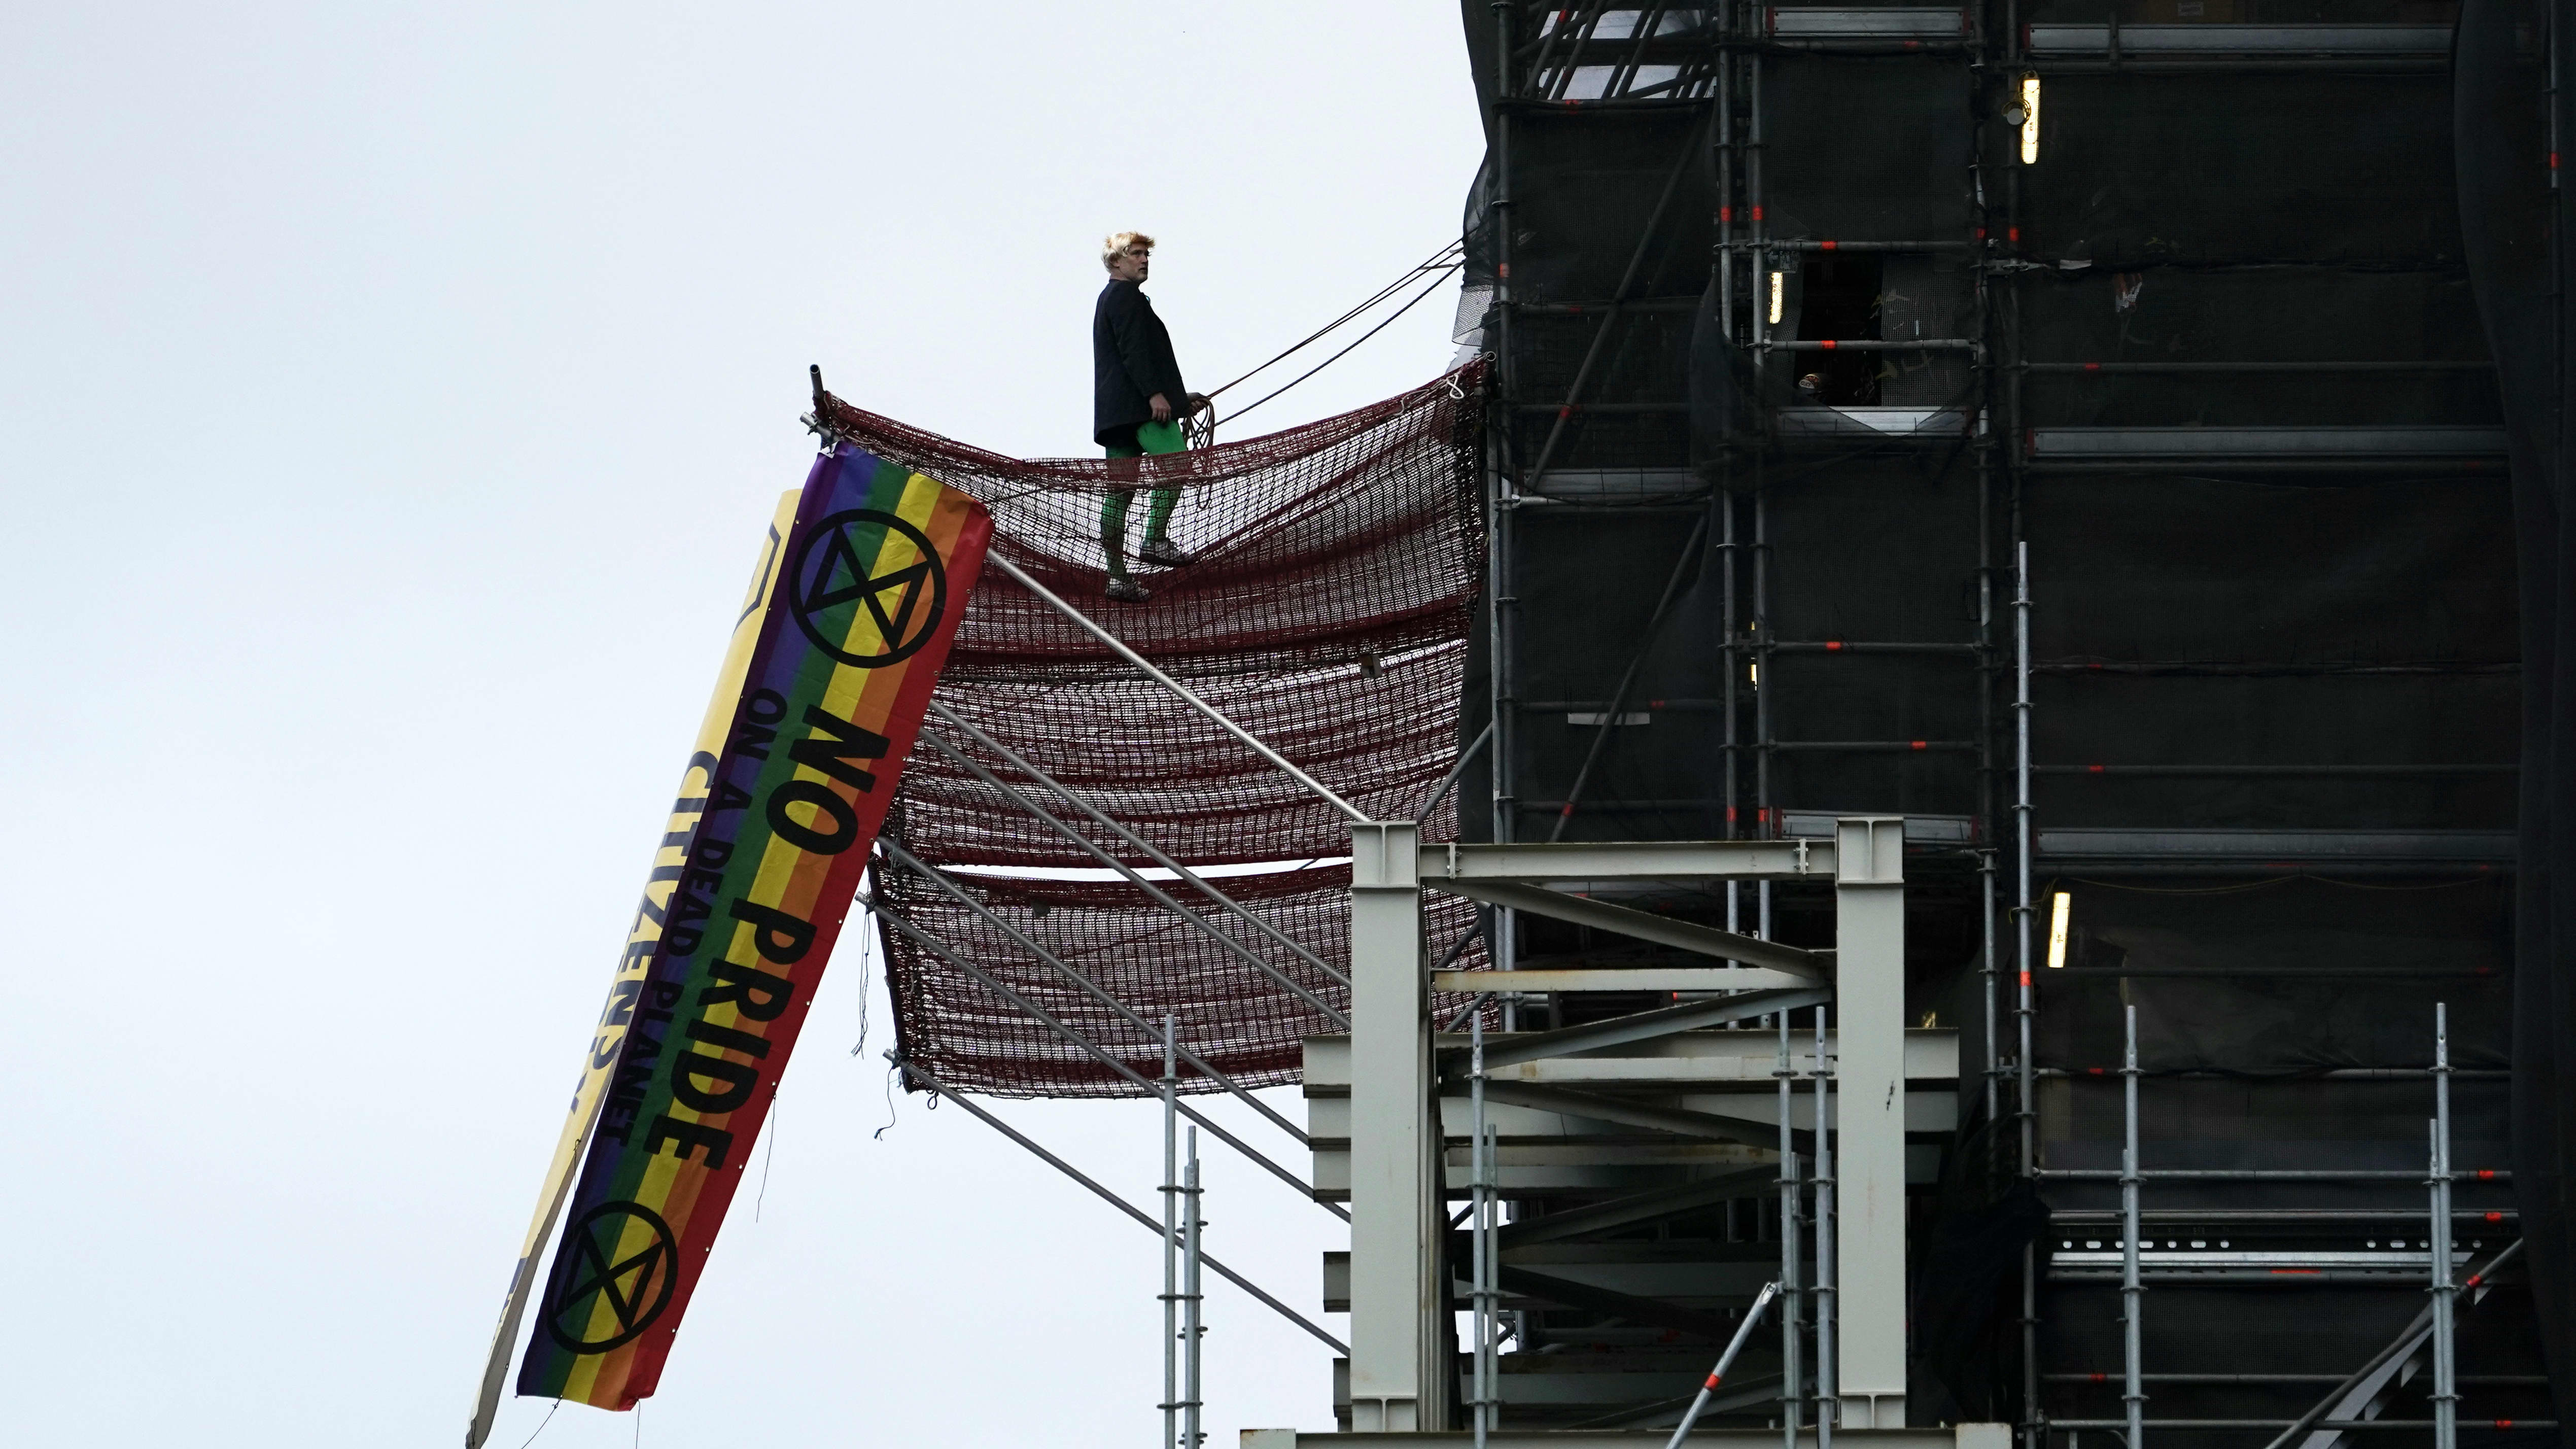 Mielenosoittaja seisoo Big Ben -kellotornia ympäröivällä rakennustelineellä. Kuvassa myös lippu, jossa teksti "No Pride".